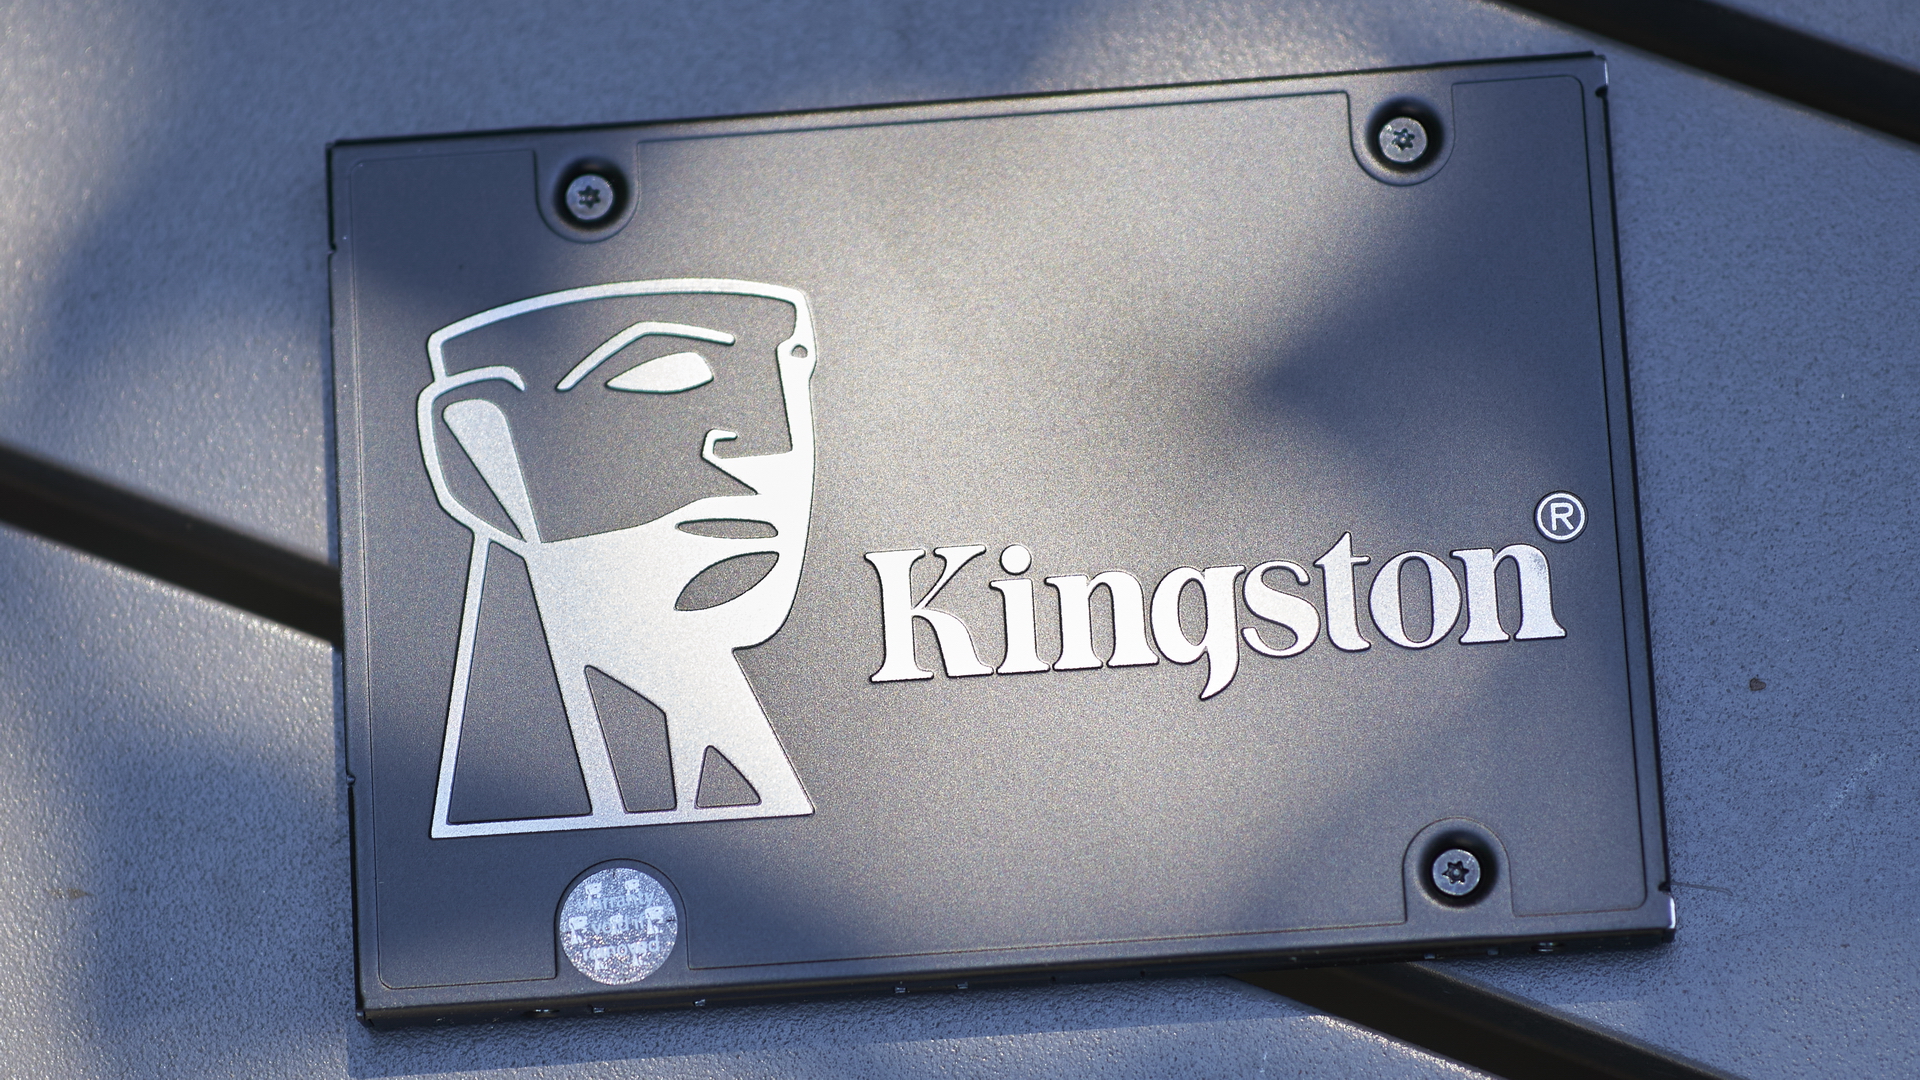 Kingston KC600 1TB Review